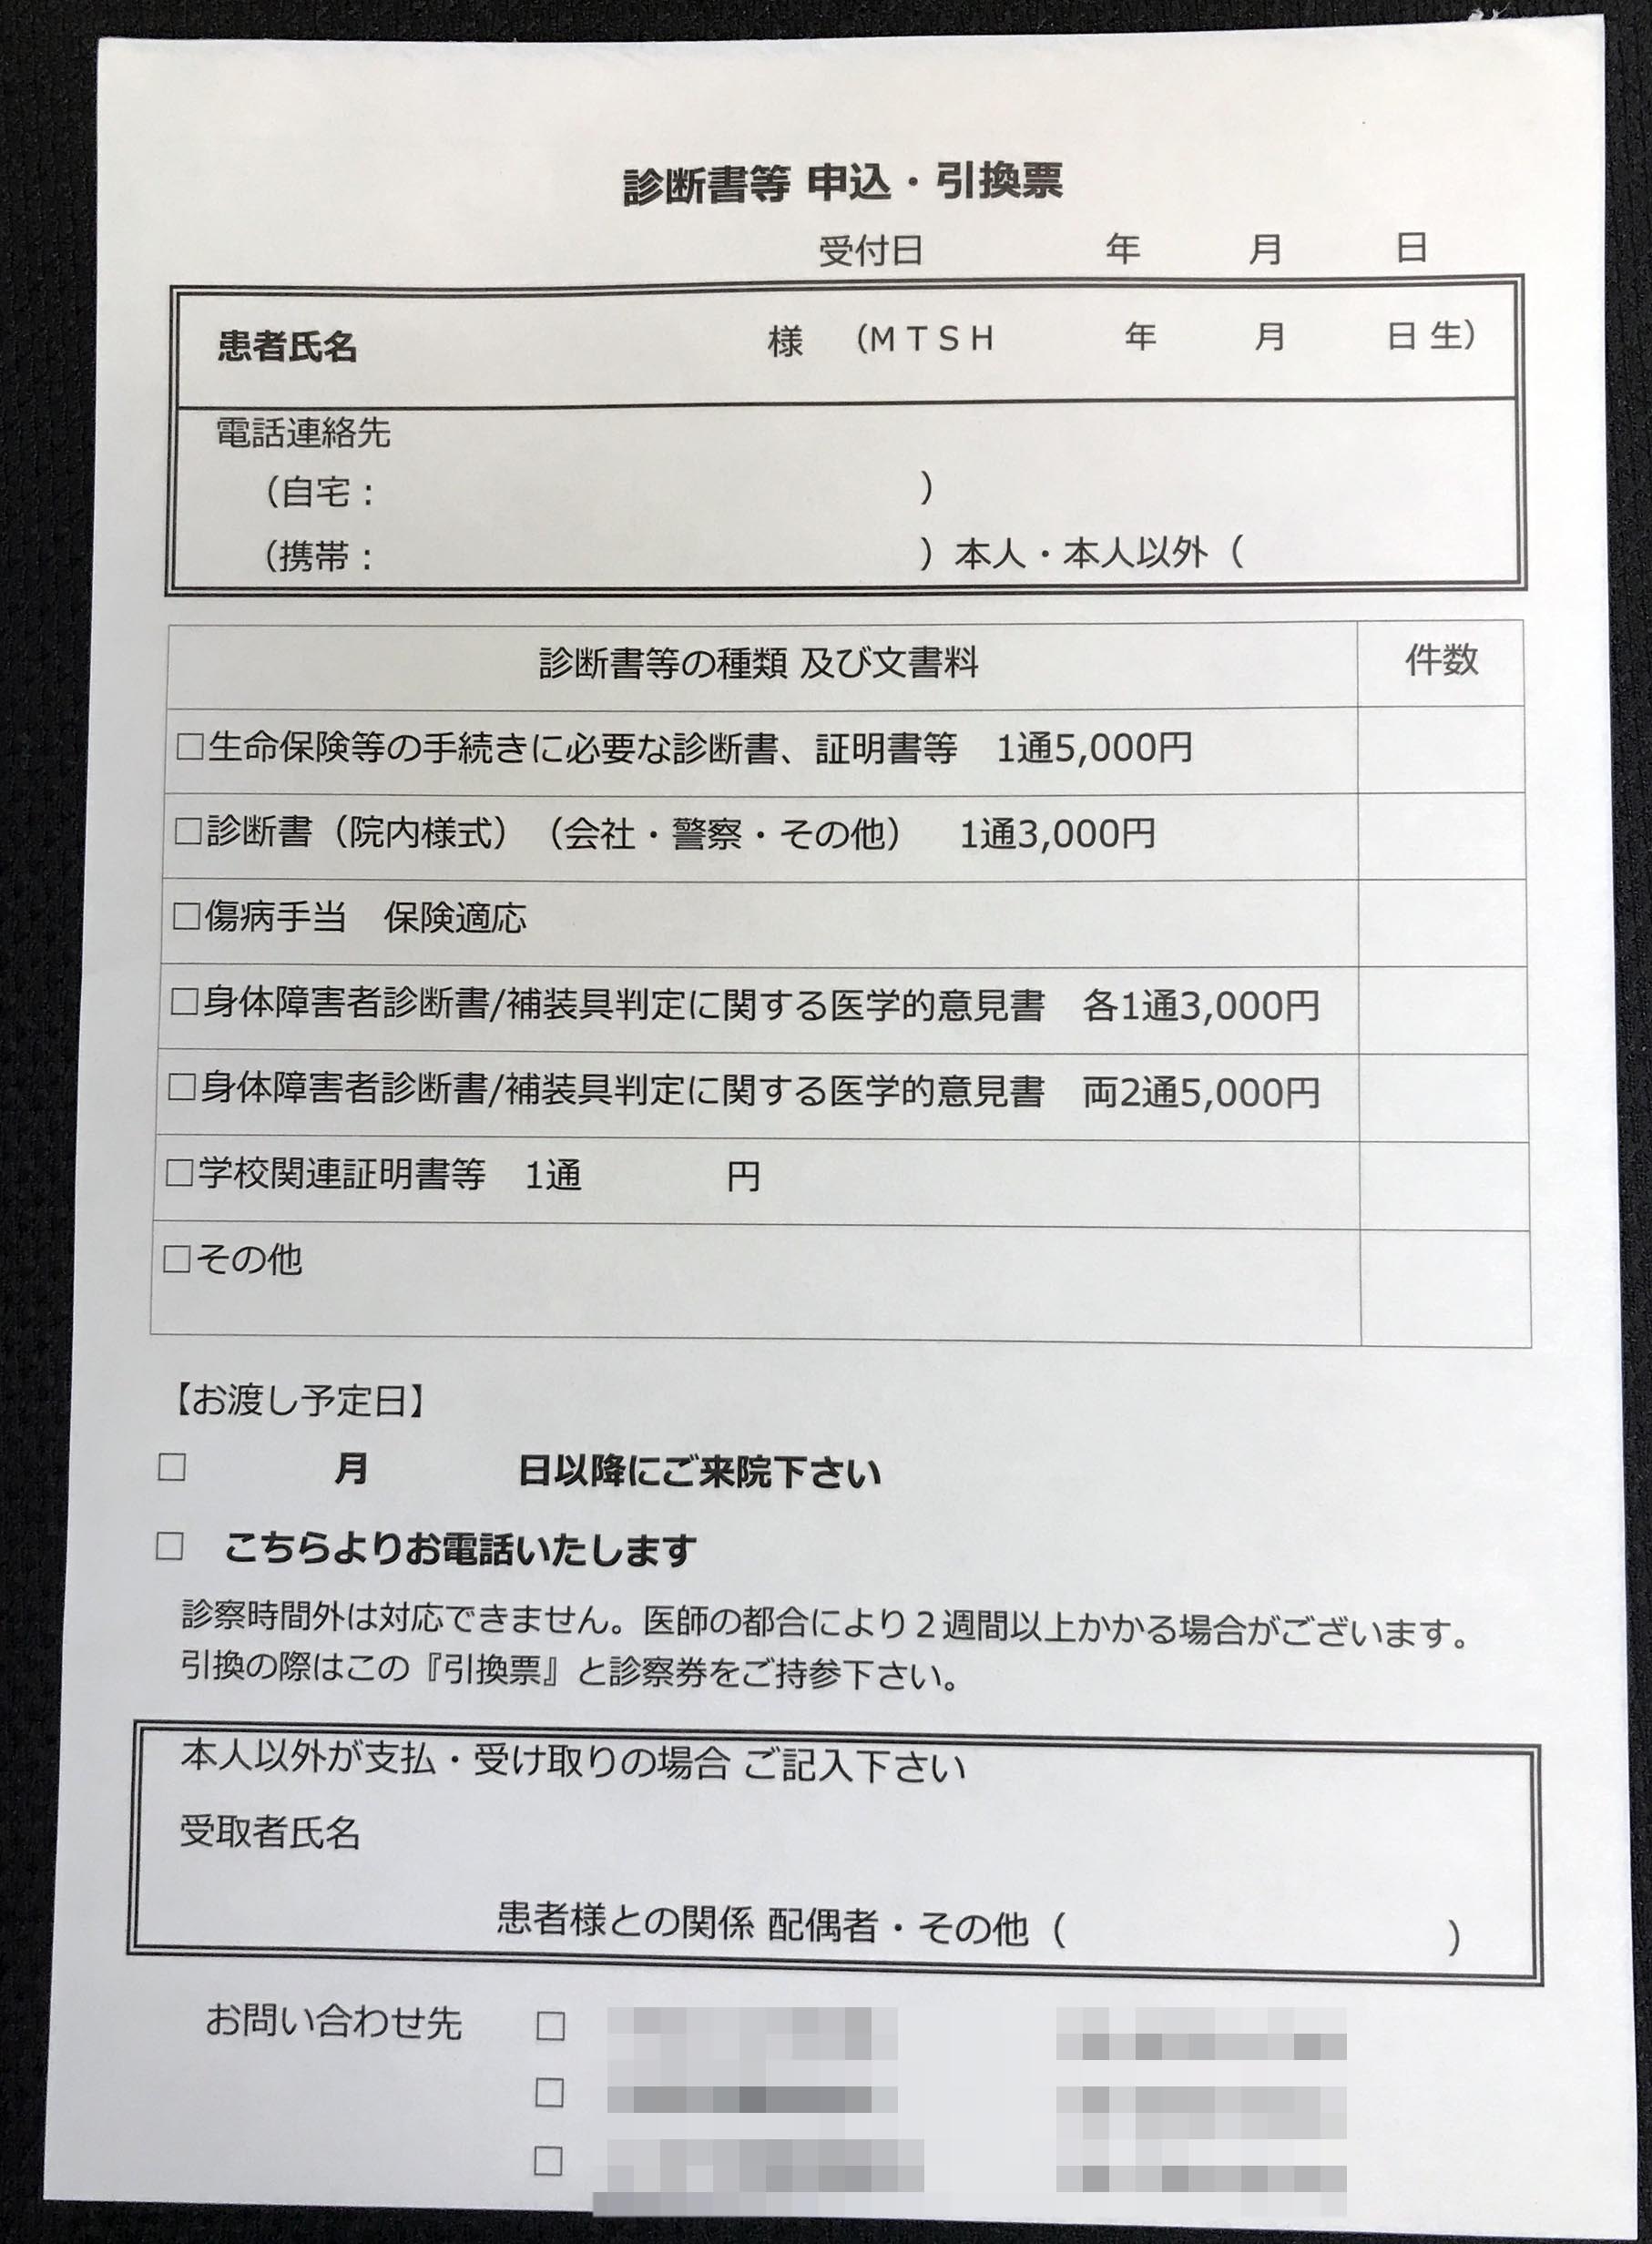 大阪府　医療法人団　診断書引換票　(２枚複写)